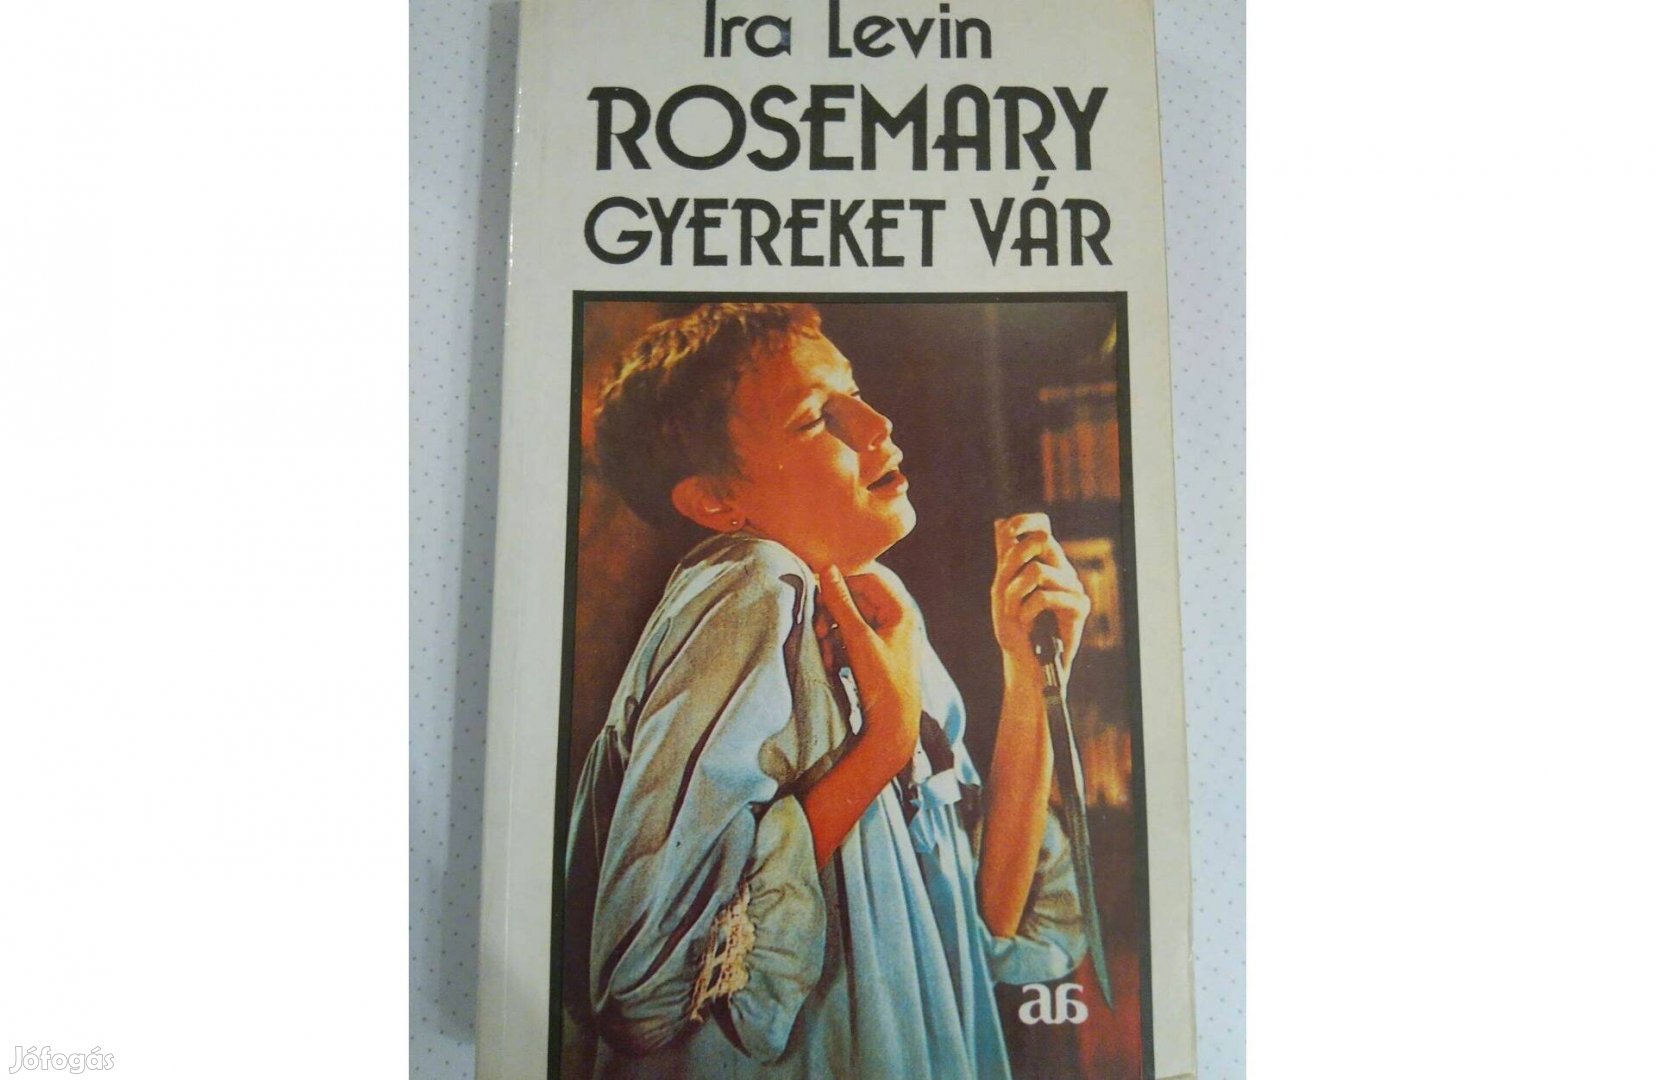 IRA Levin: Rosemary gyereket vár c. könyv eladó!